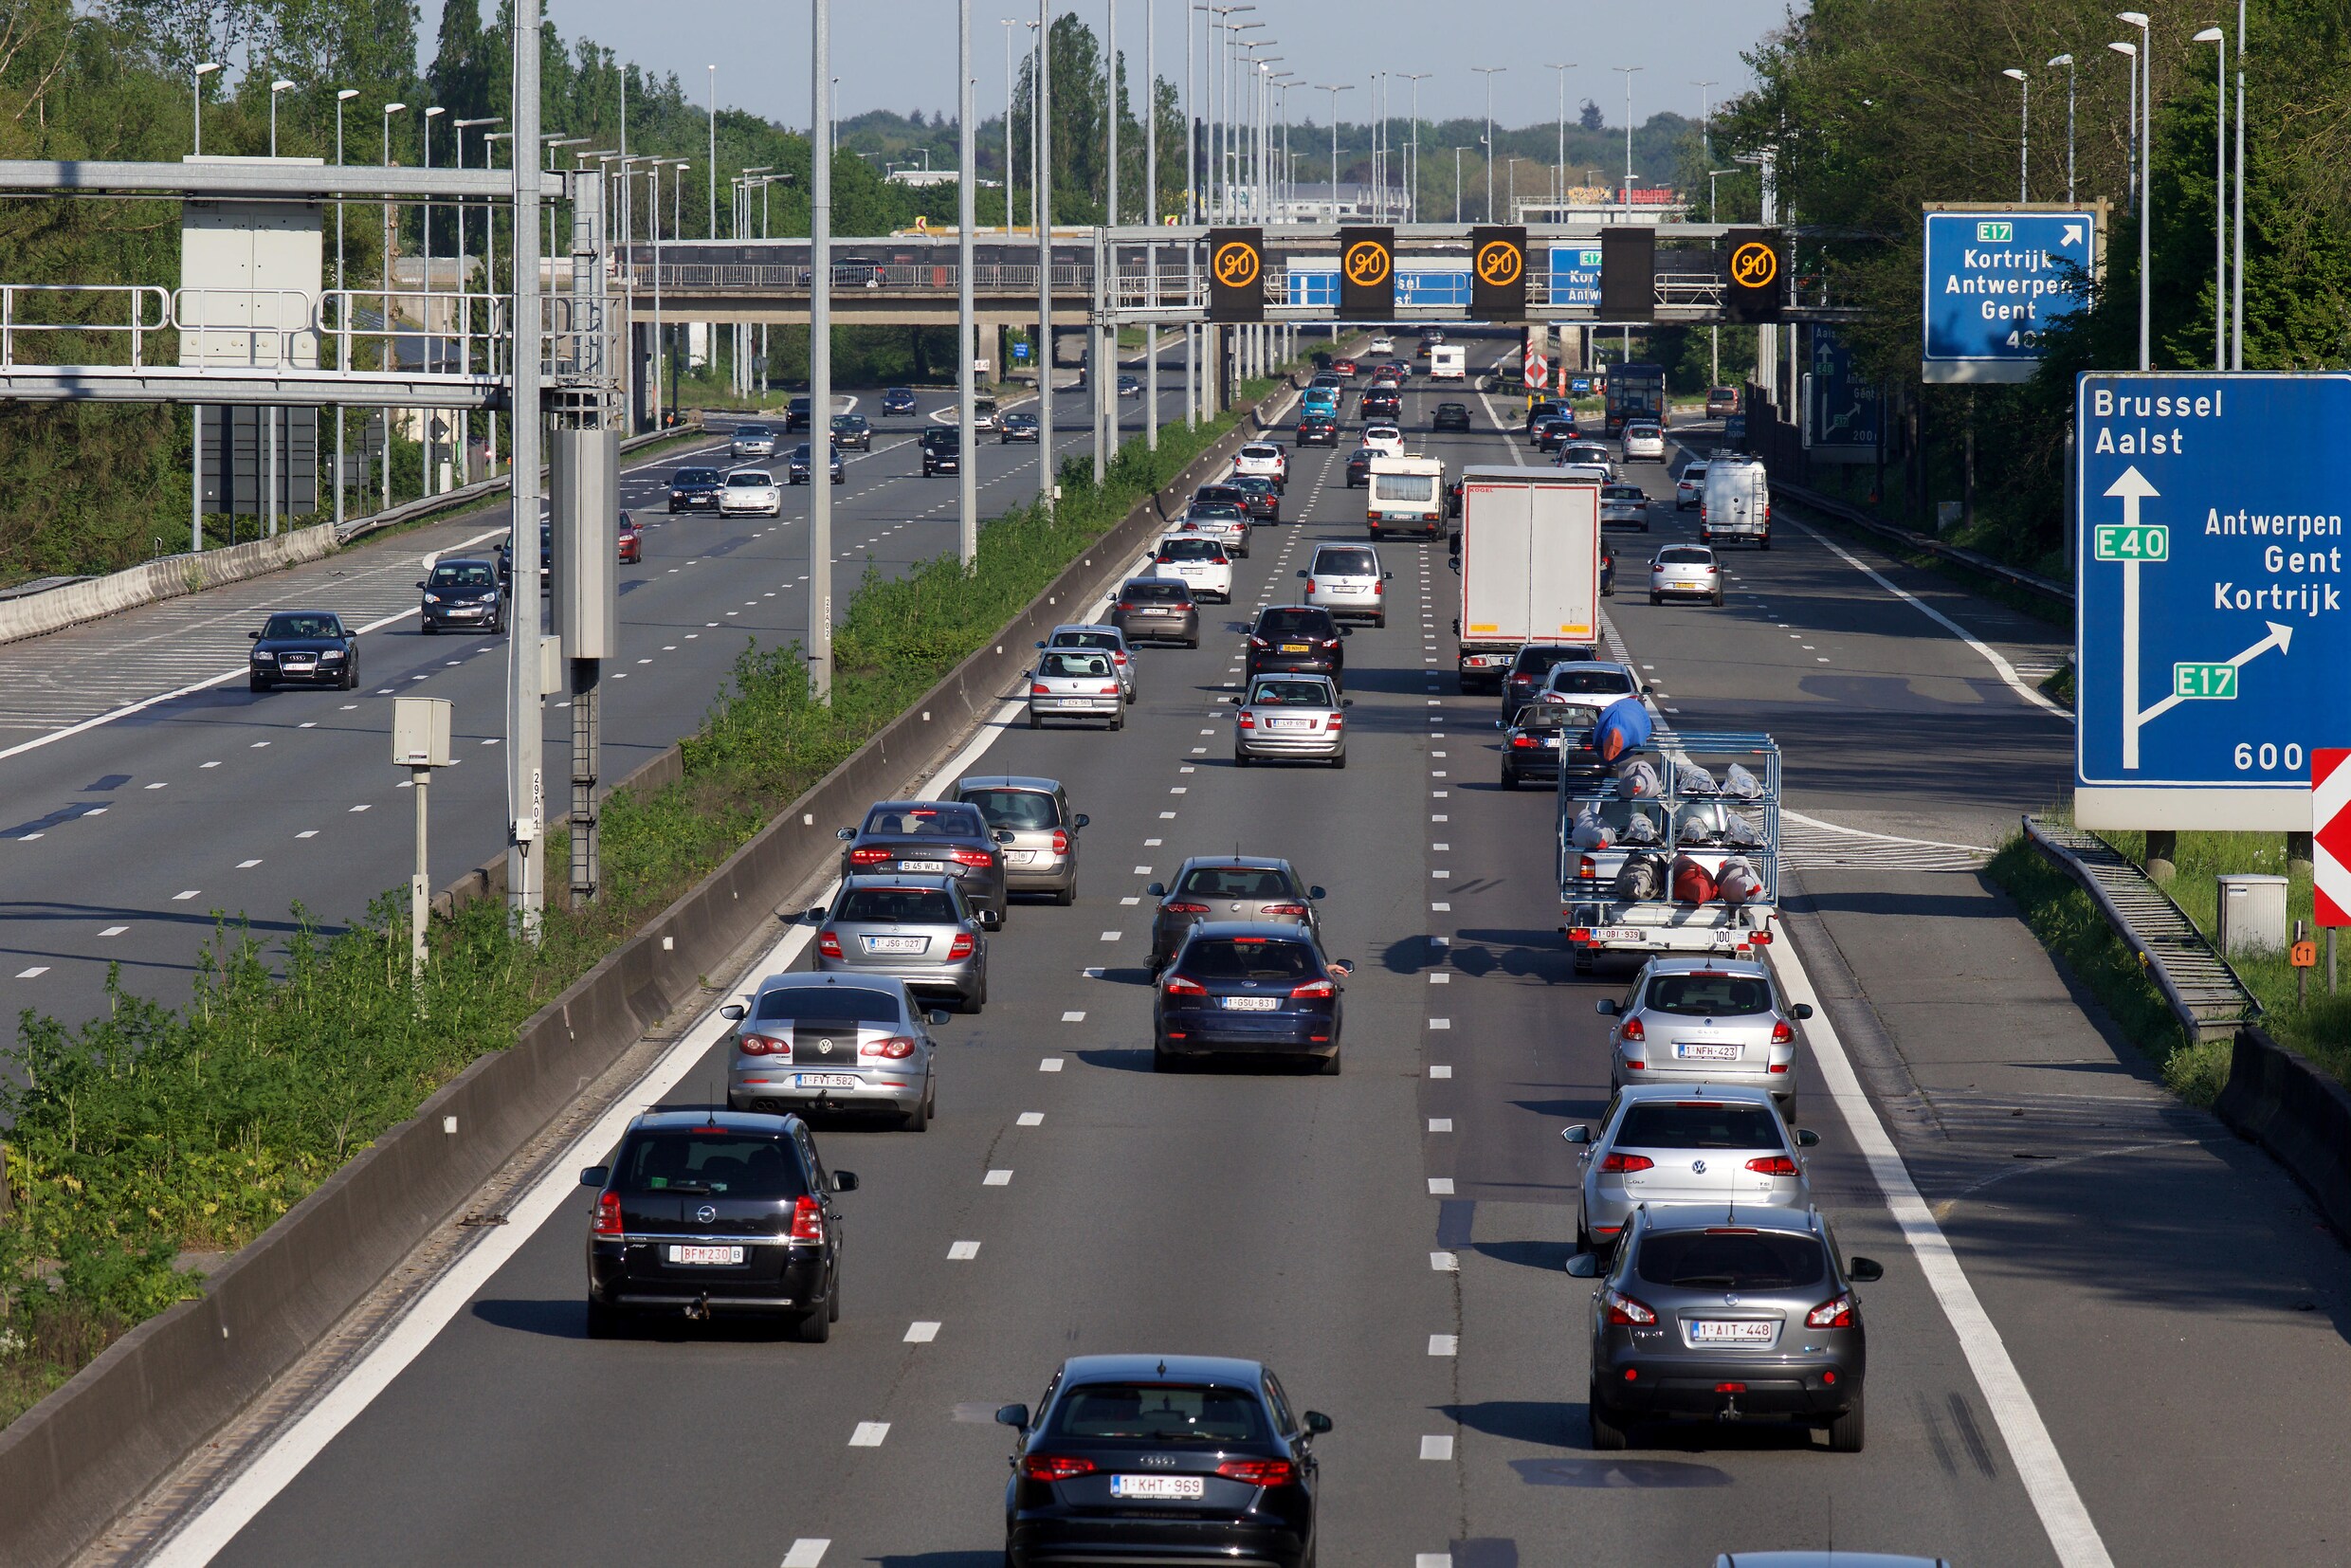 "80 procent van weggebruikers wil 130km/u op autosnelwegen"